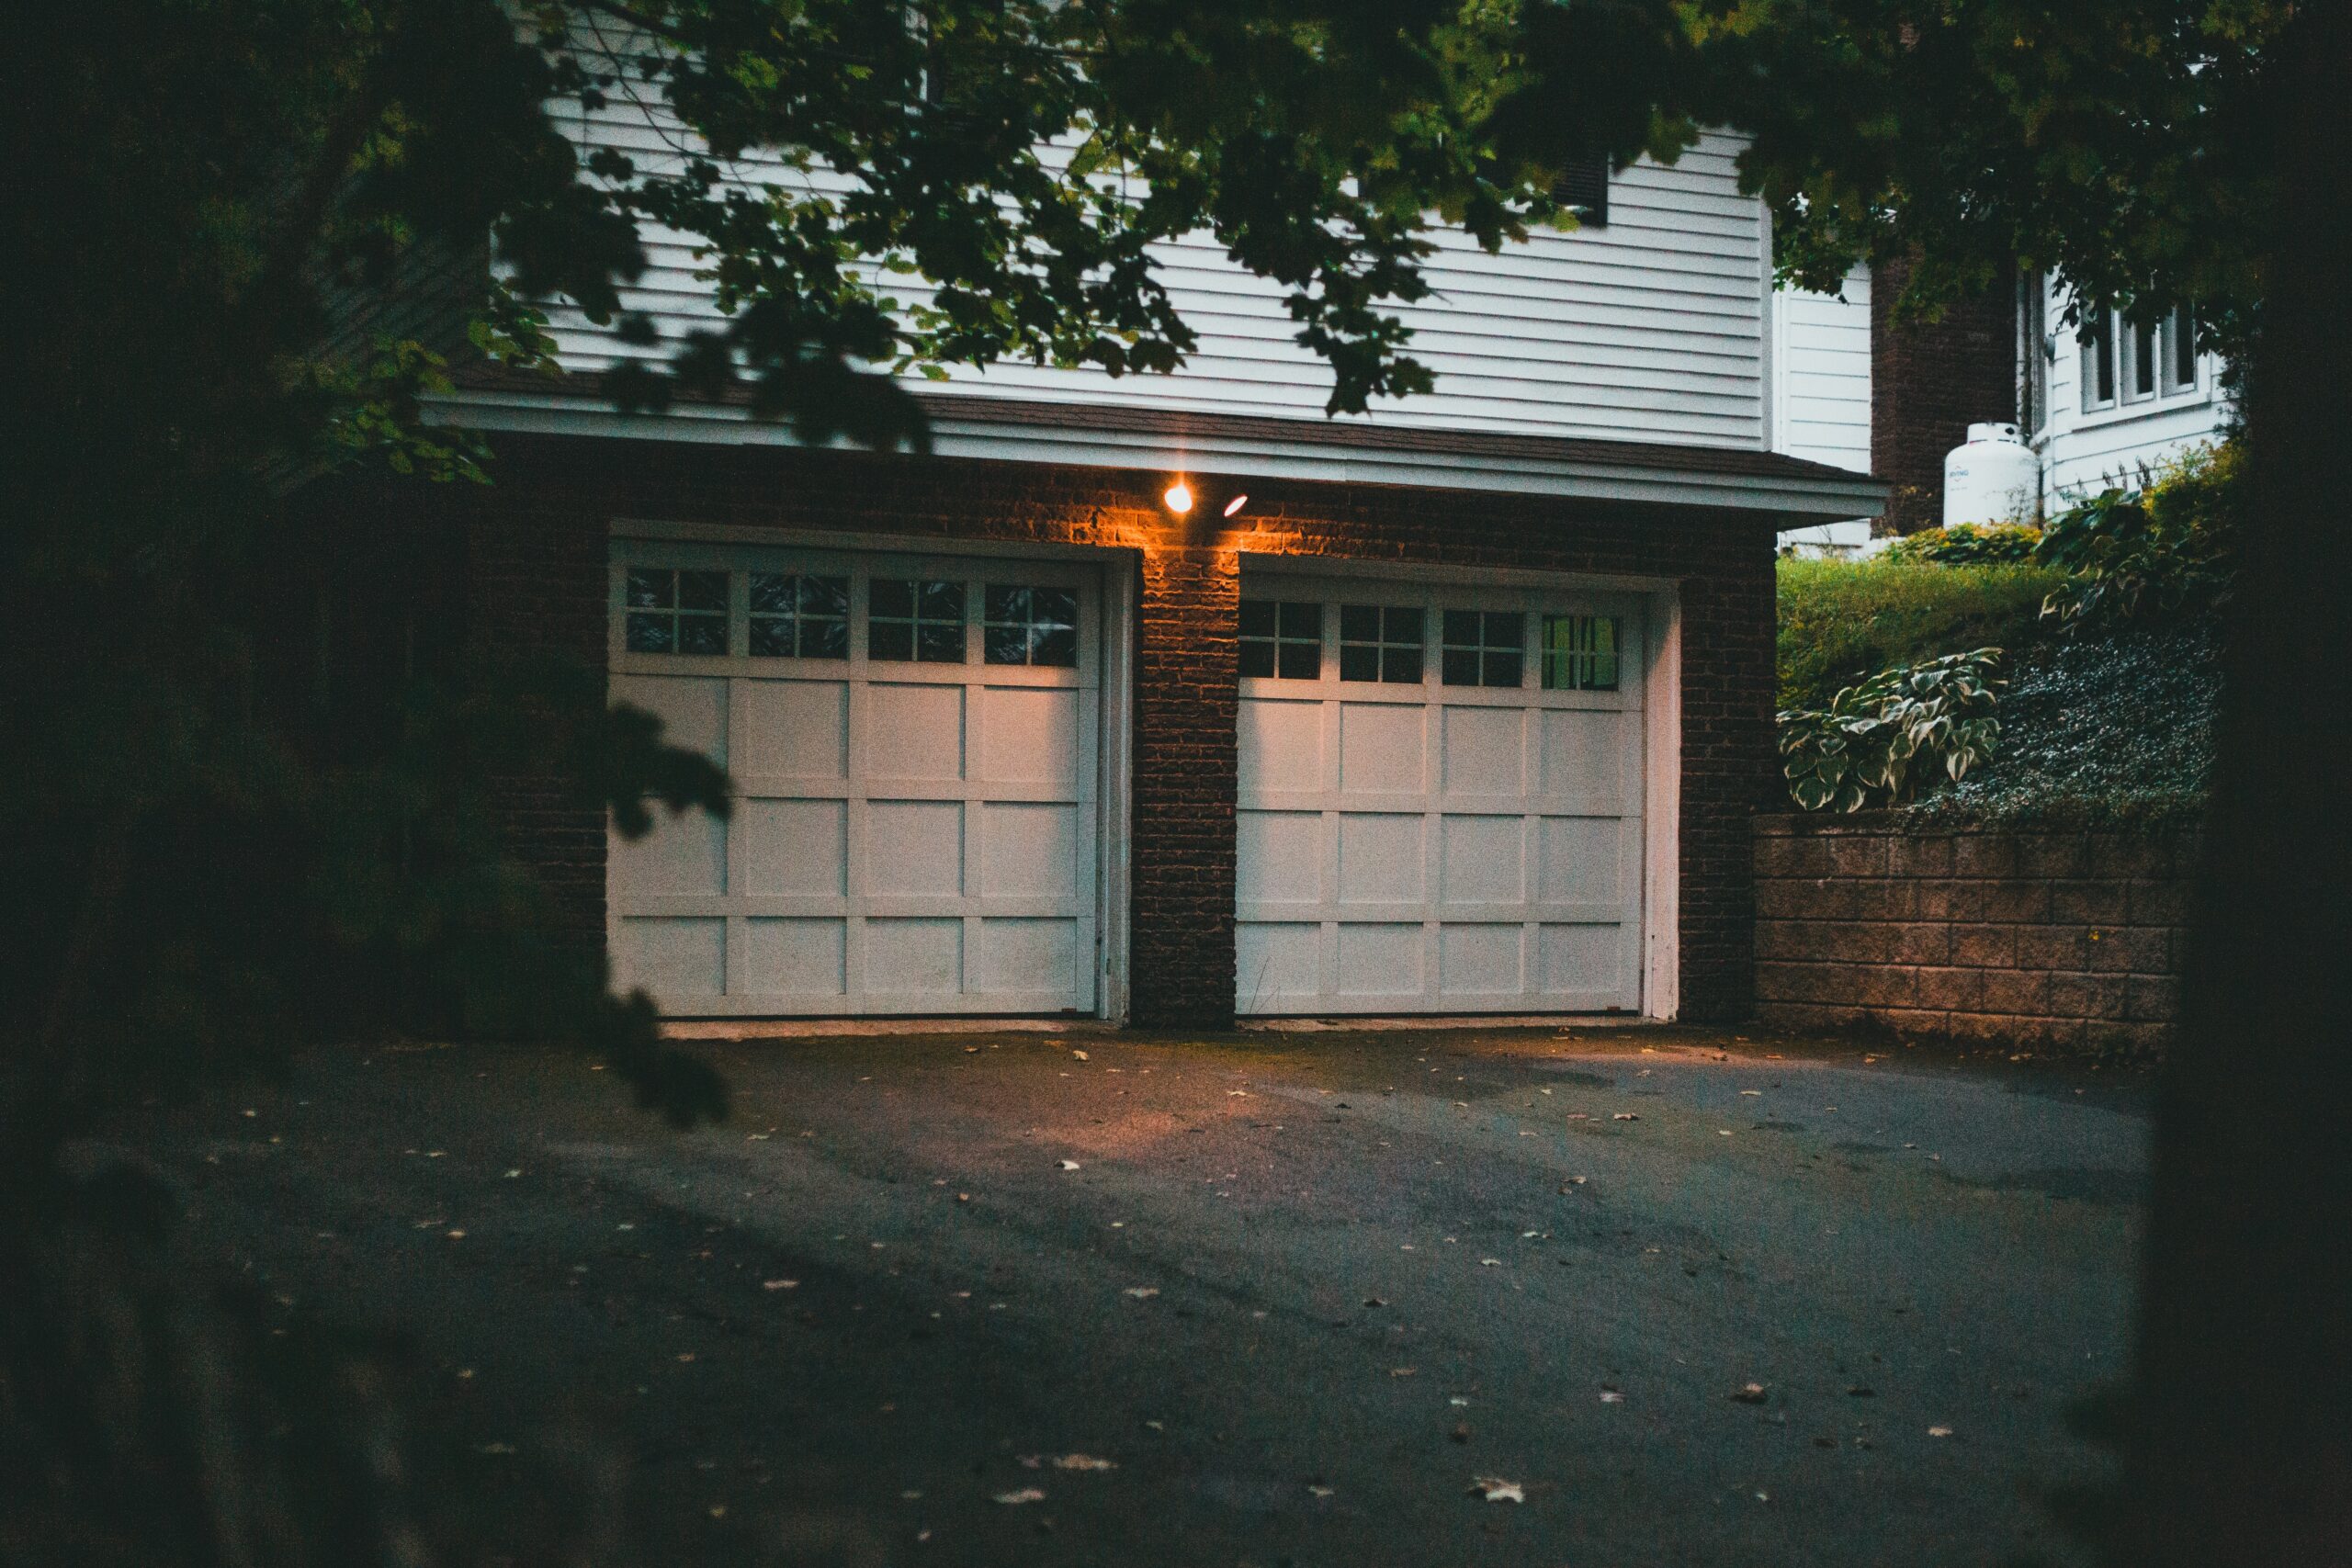 Benefits of an Insulated Garage Door